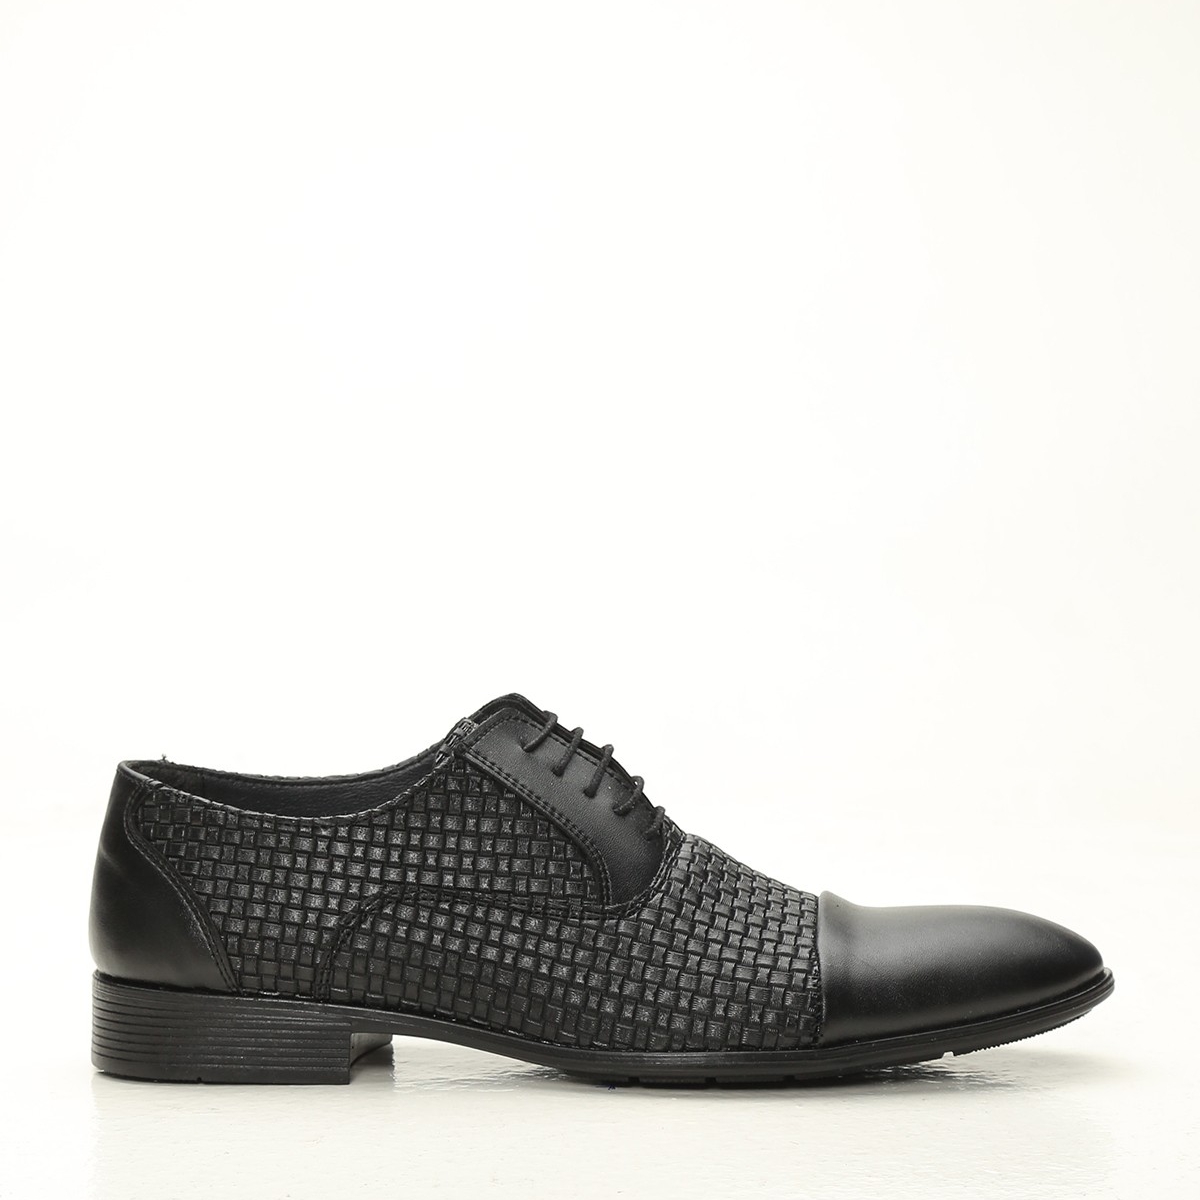 Flo Siyah Erkek Klasik Ayakkabı 1009-20-112006. 1